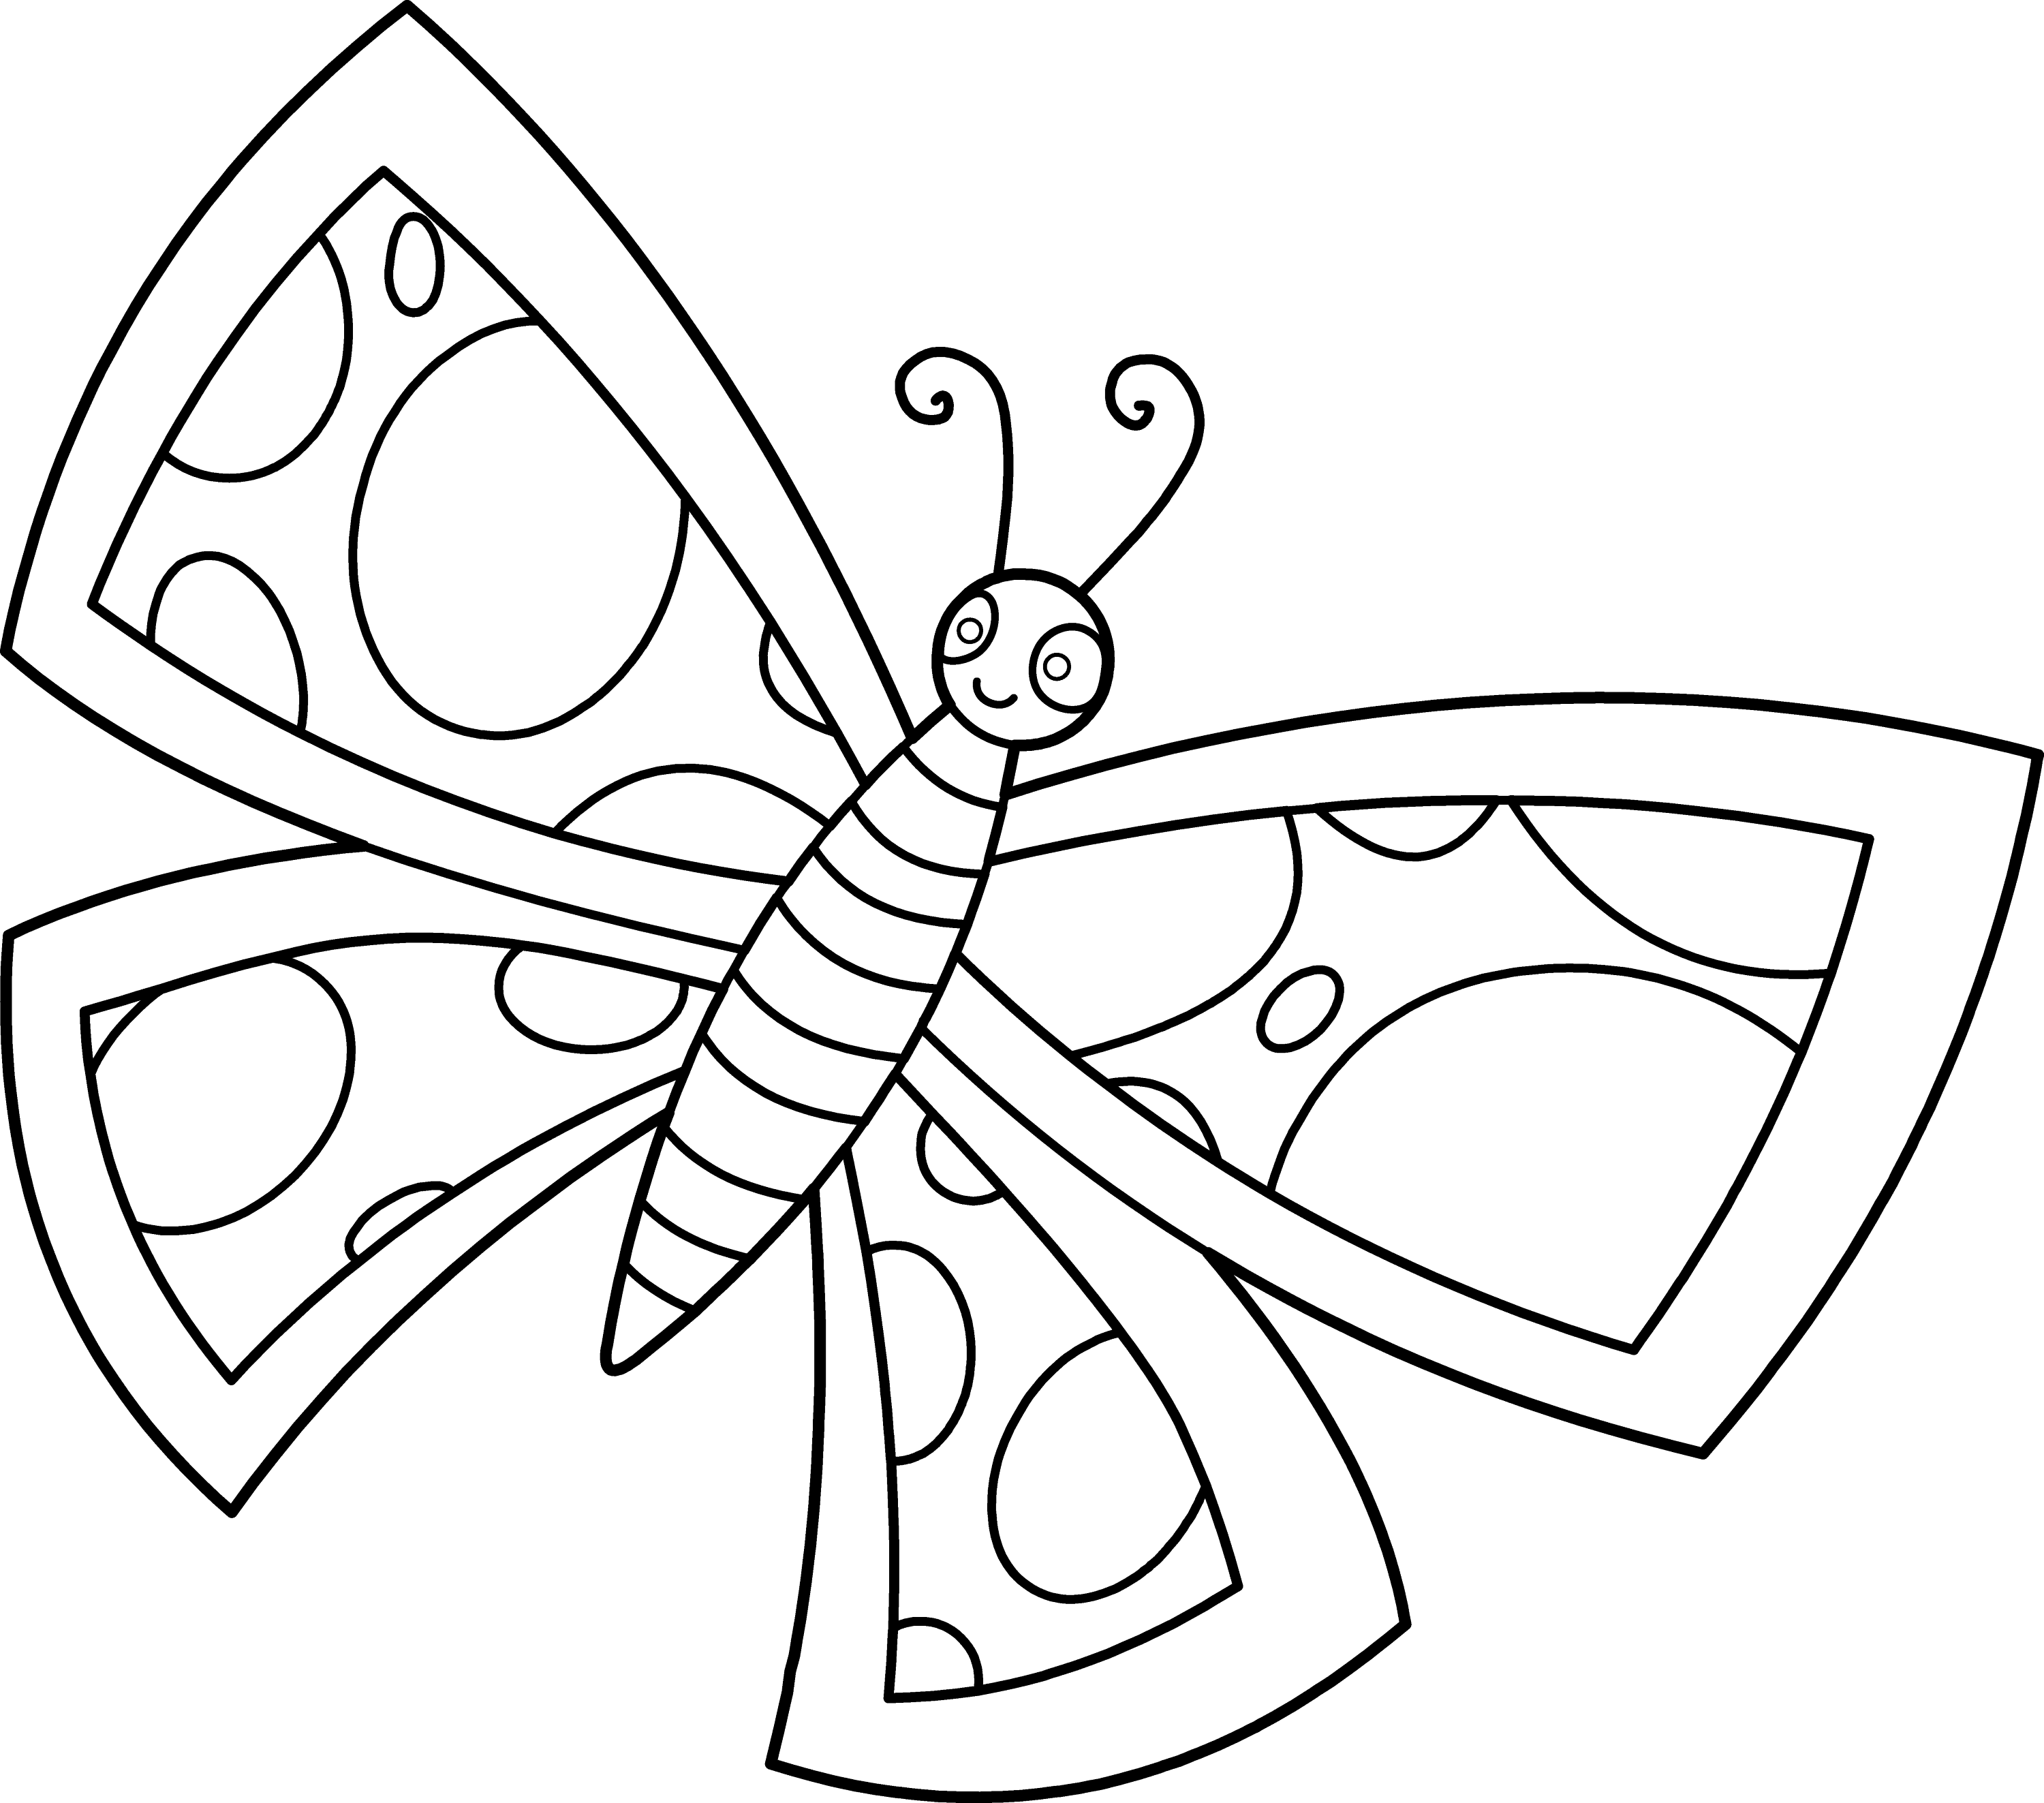 Раскраски для детей 4 5 бабочки. Бабочка раскраска для детей. Бабочка раскраска для малышей. Детские раскраски бабочки. Бабочка картинка для детей раскраска.